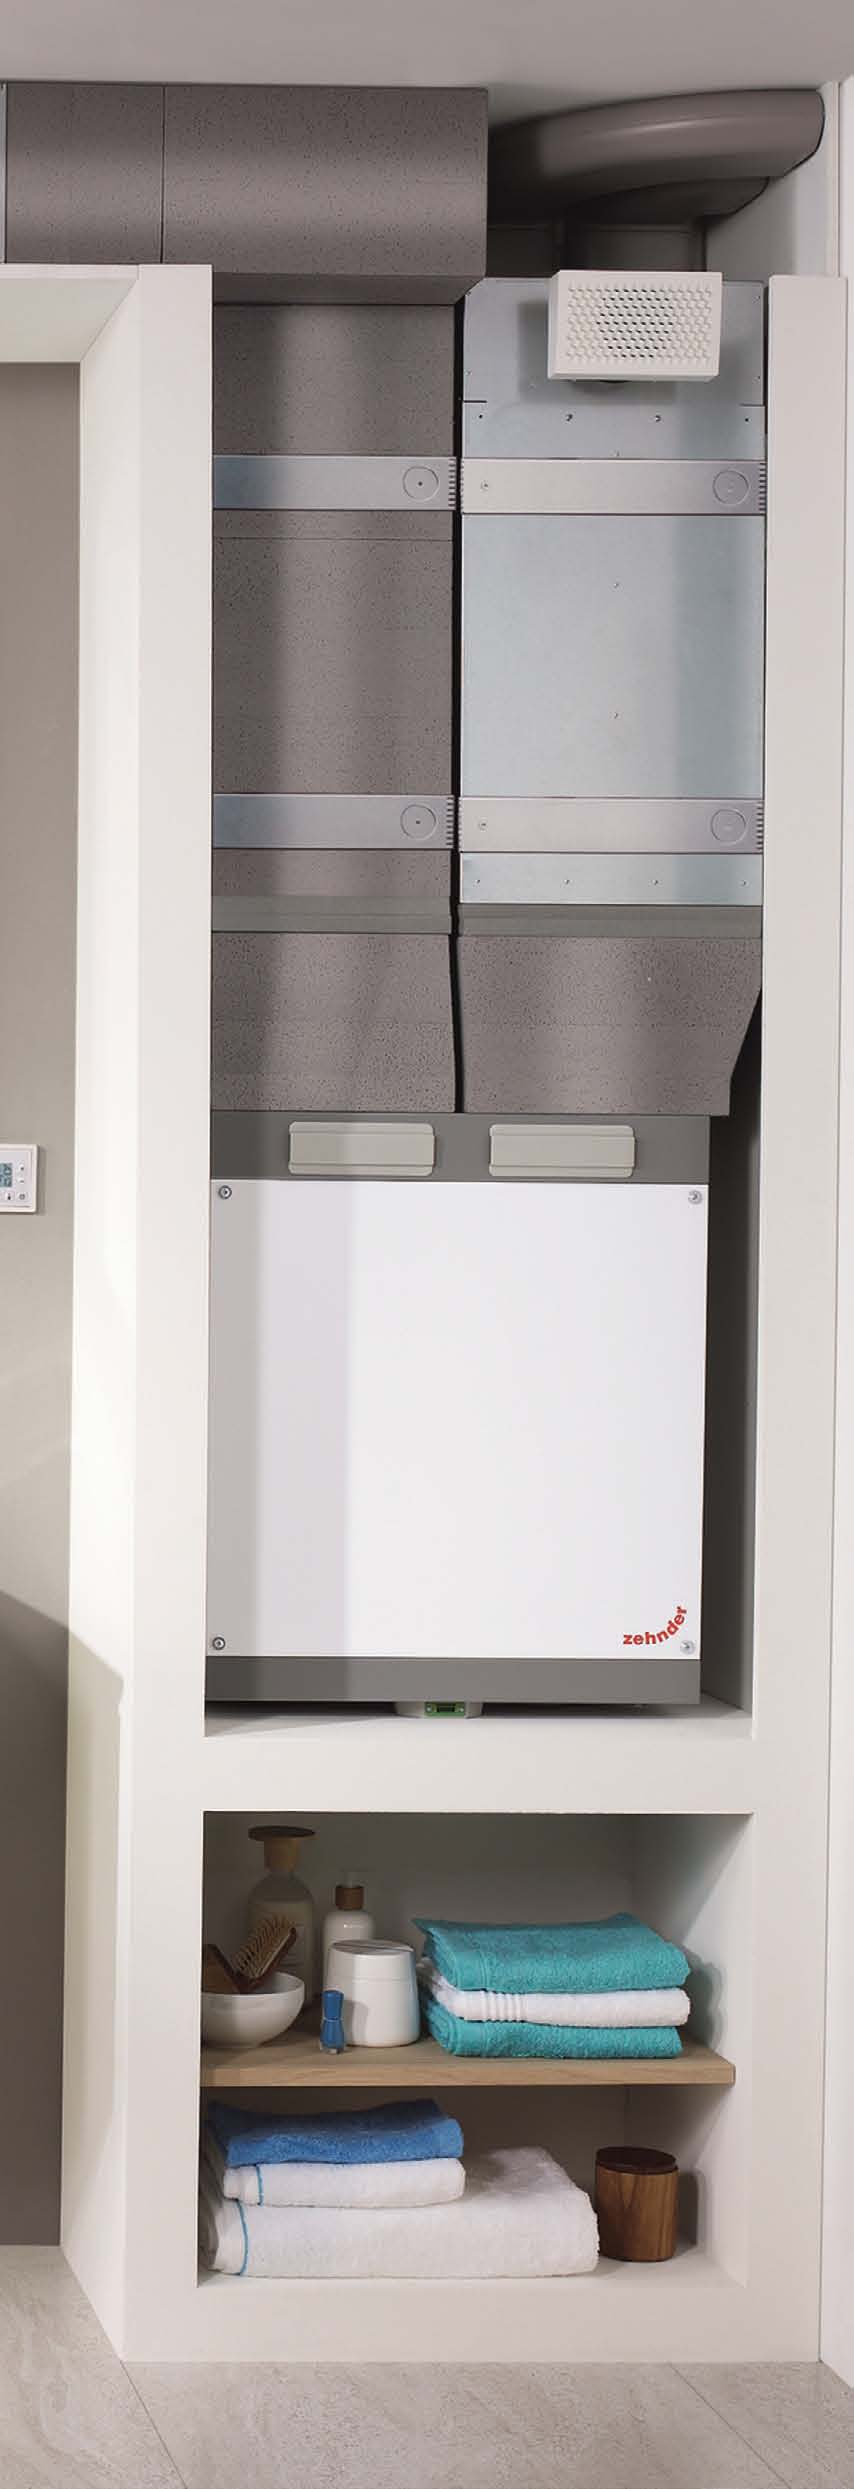 System dystrybucji powietrza OnFloor Kompaktowy system wentylacji pomieszczeń. Systemy rozdzielania powietrza firmy Zehnder troszczą się o optymalną jakość powietrza.